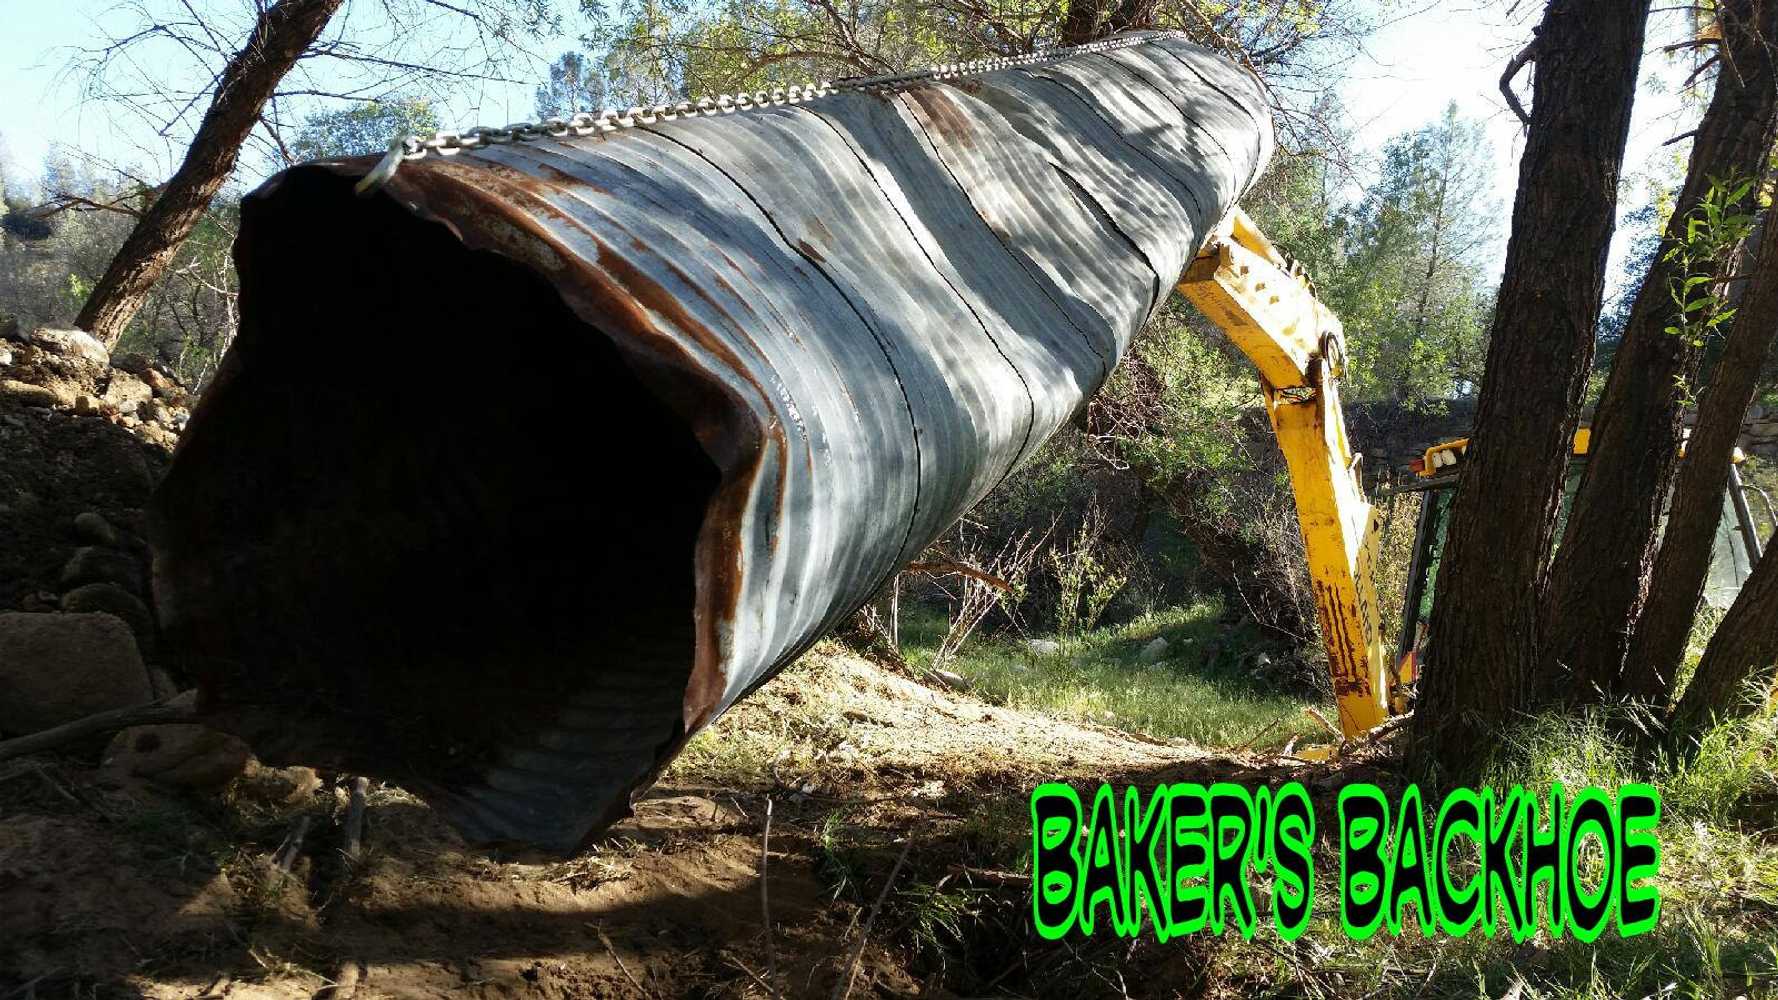 Baker's Backhoe